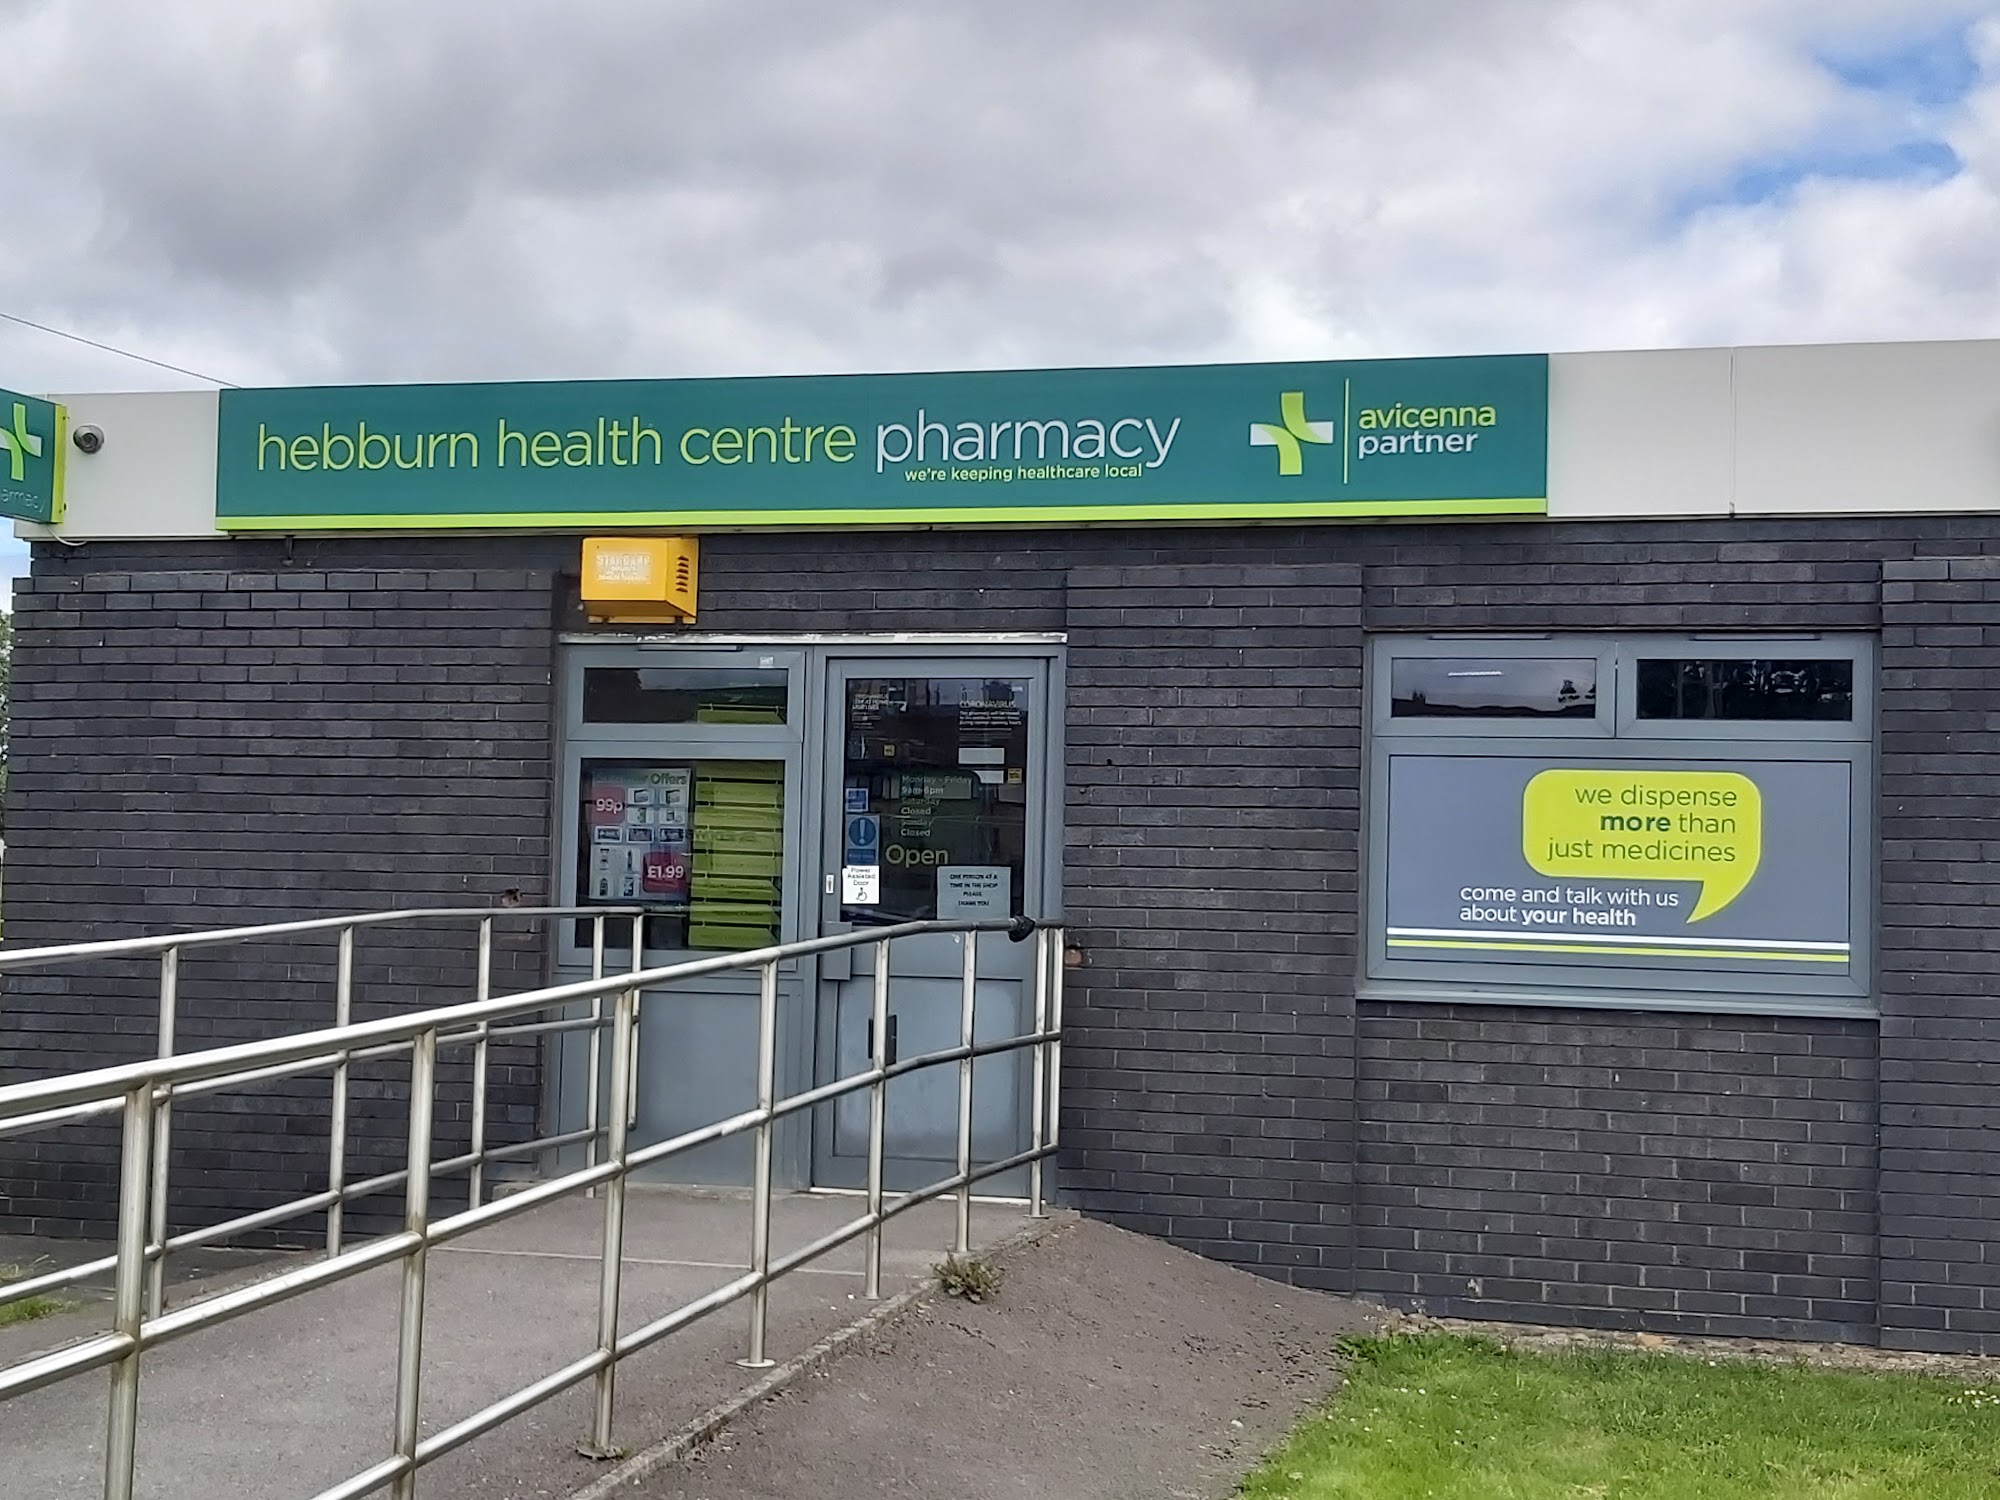 Hebburn Health Centre Pharmacy - Avicenna Partner